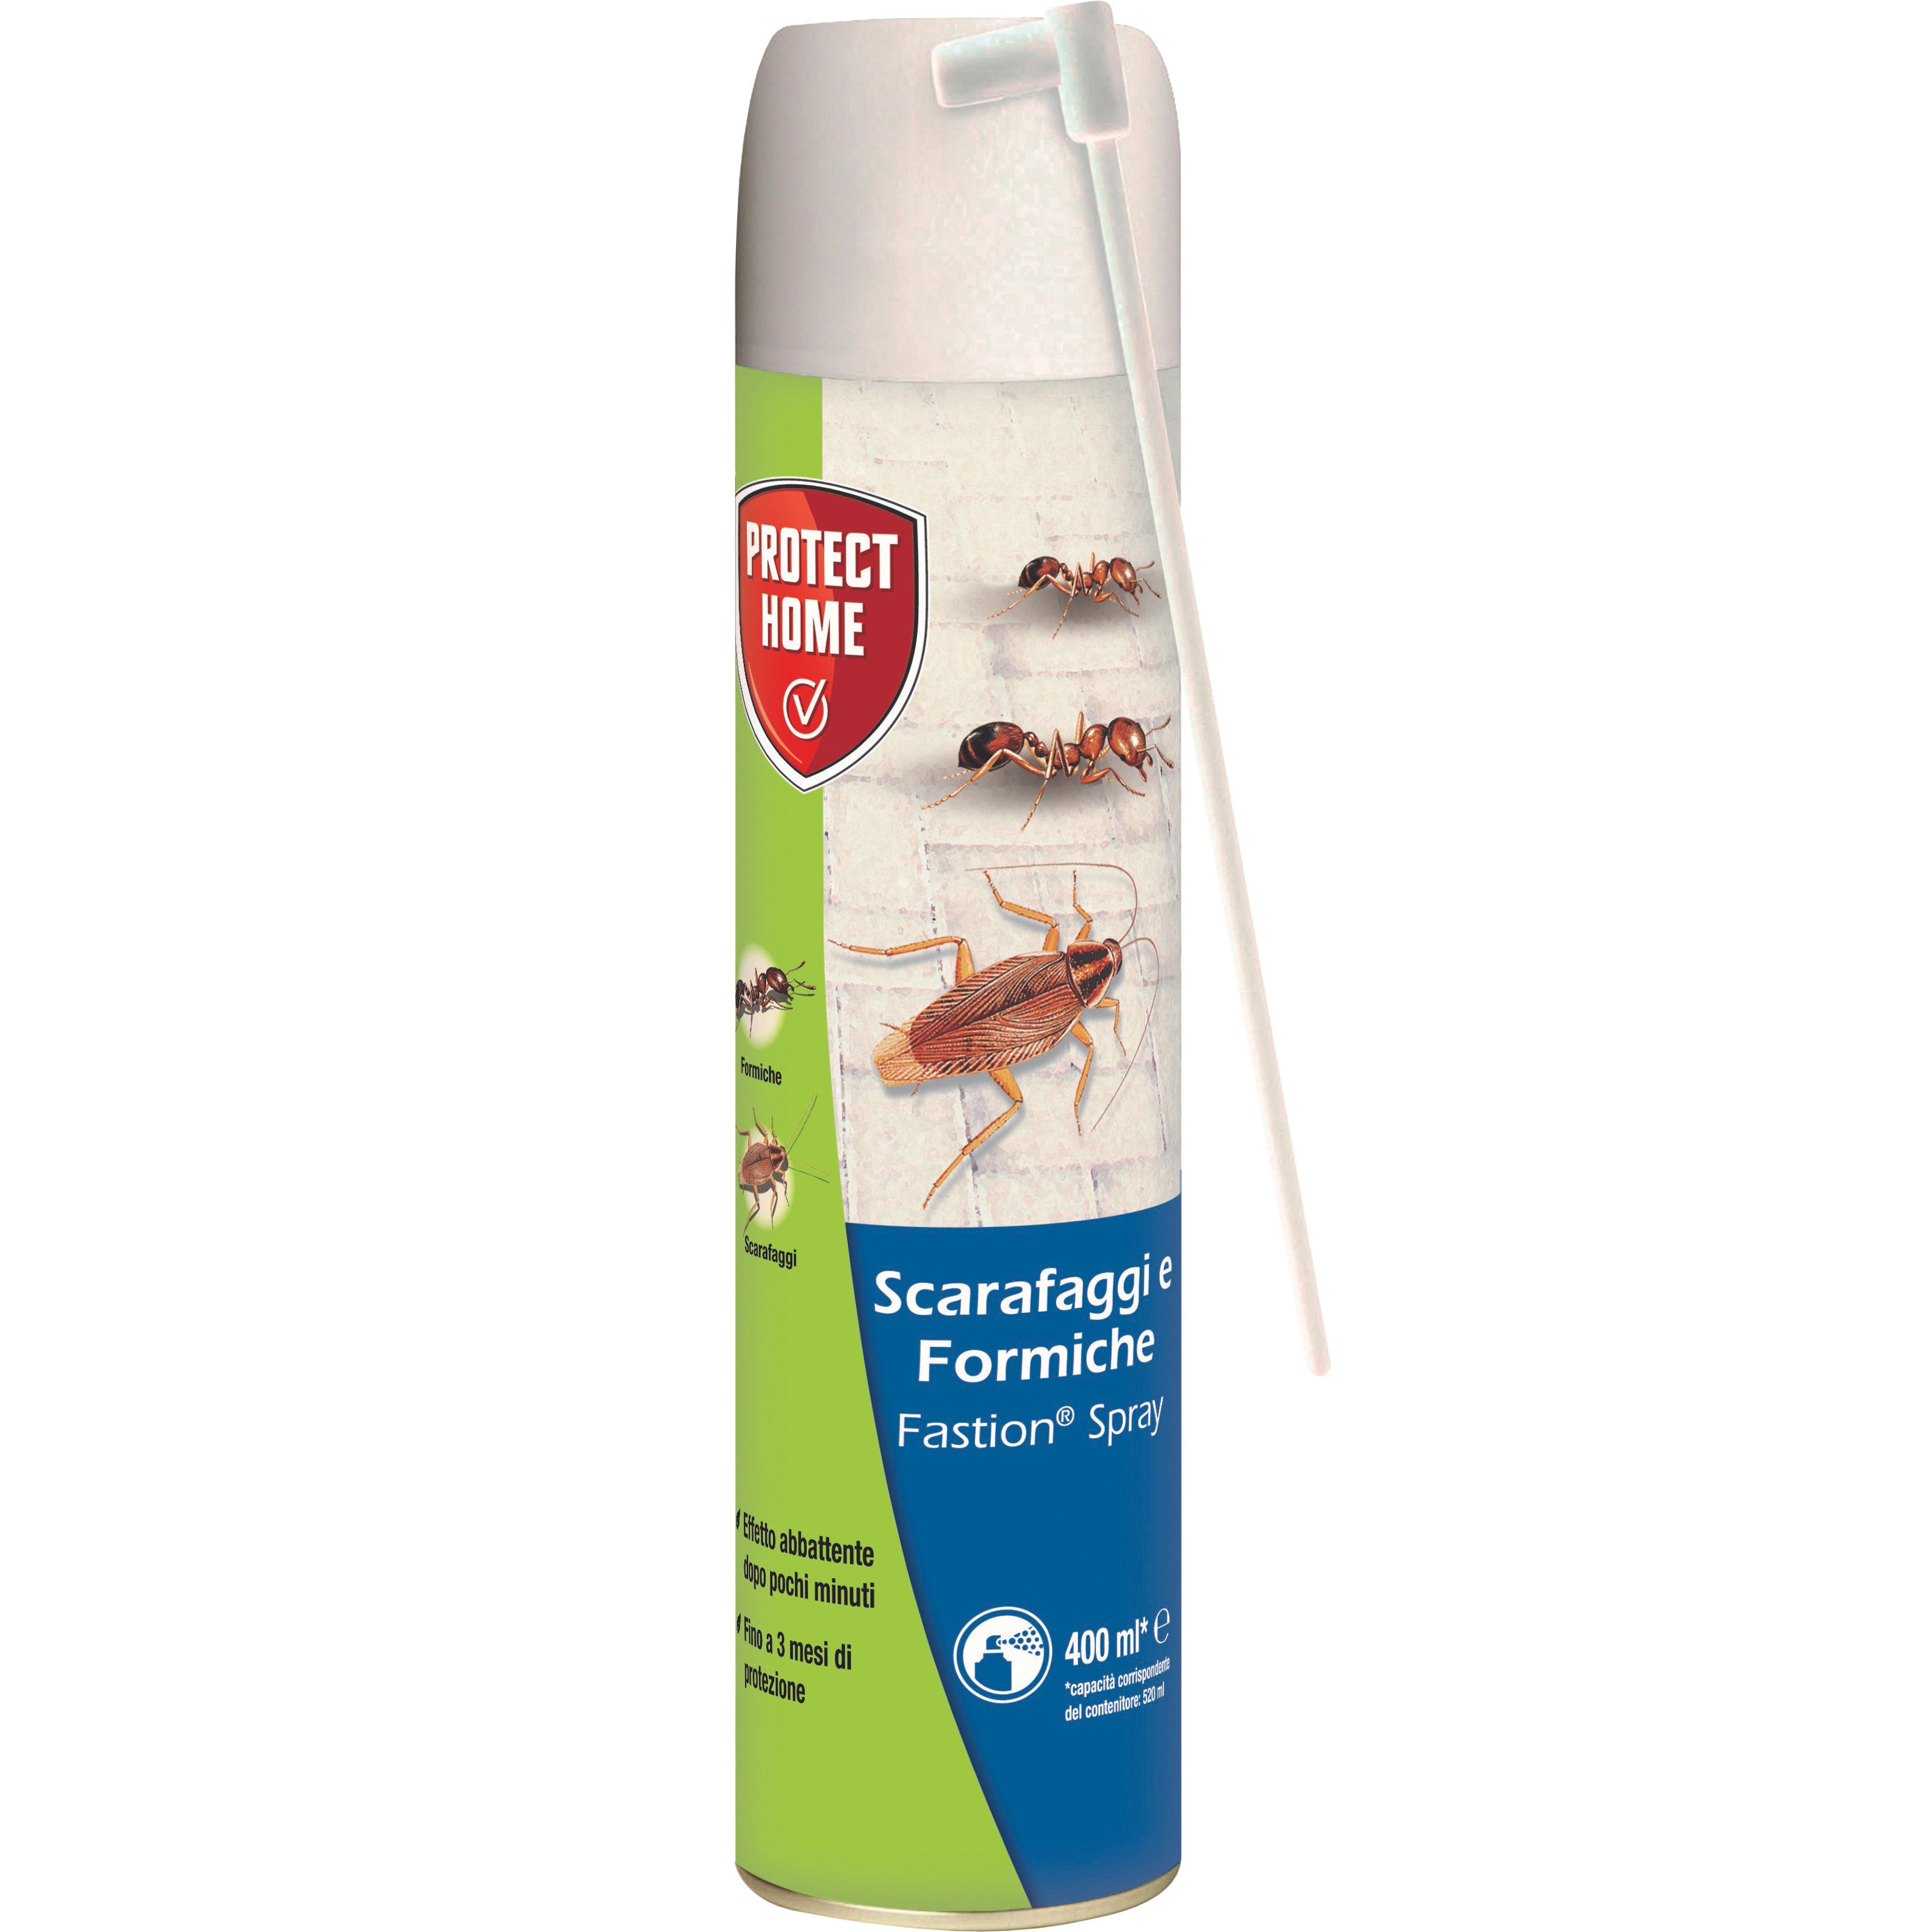 Bayer/sbm fastion scarafaggi/formiche spray ml400